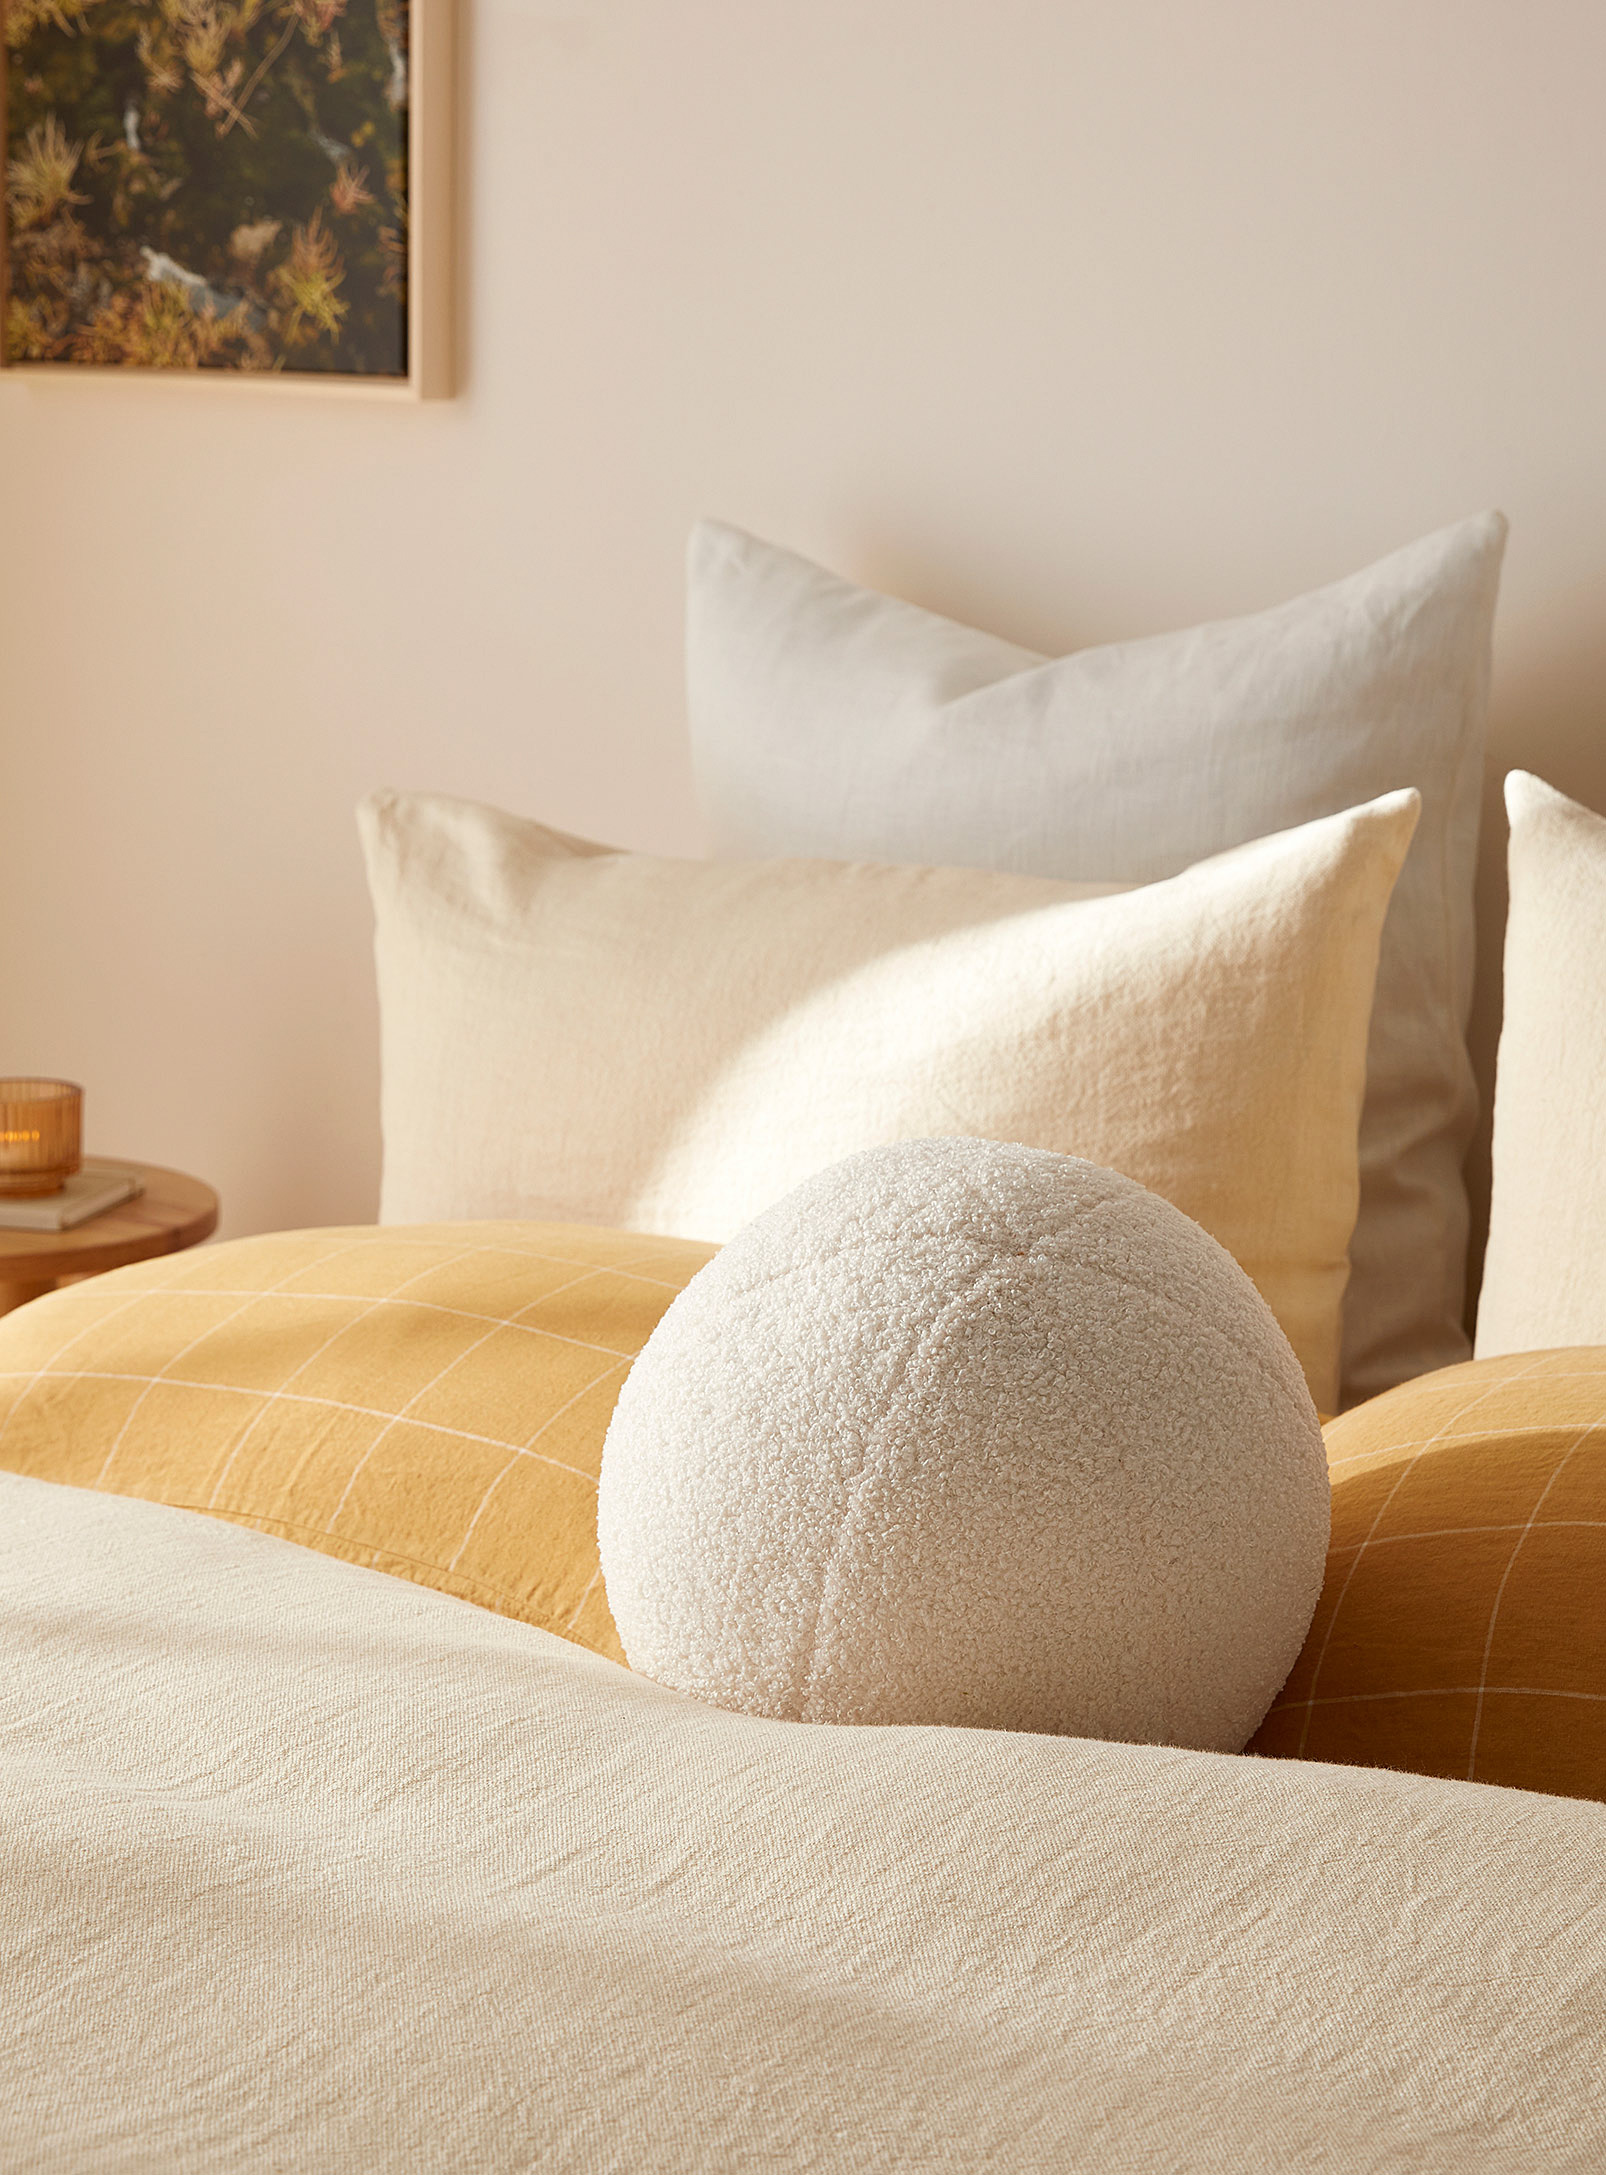 Simons Maison - Ball-shaped sherpa cushion 35 cm in diameter